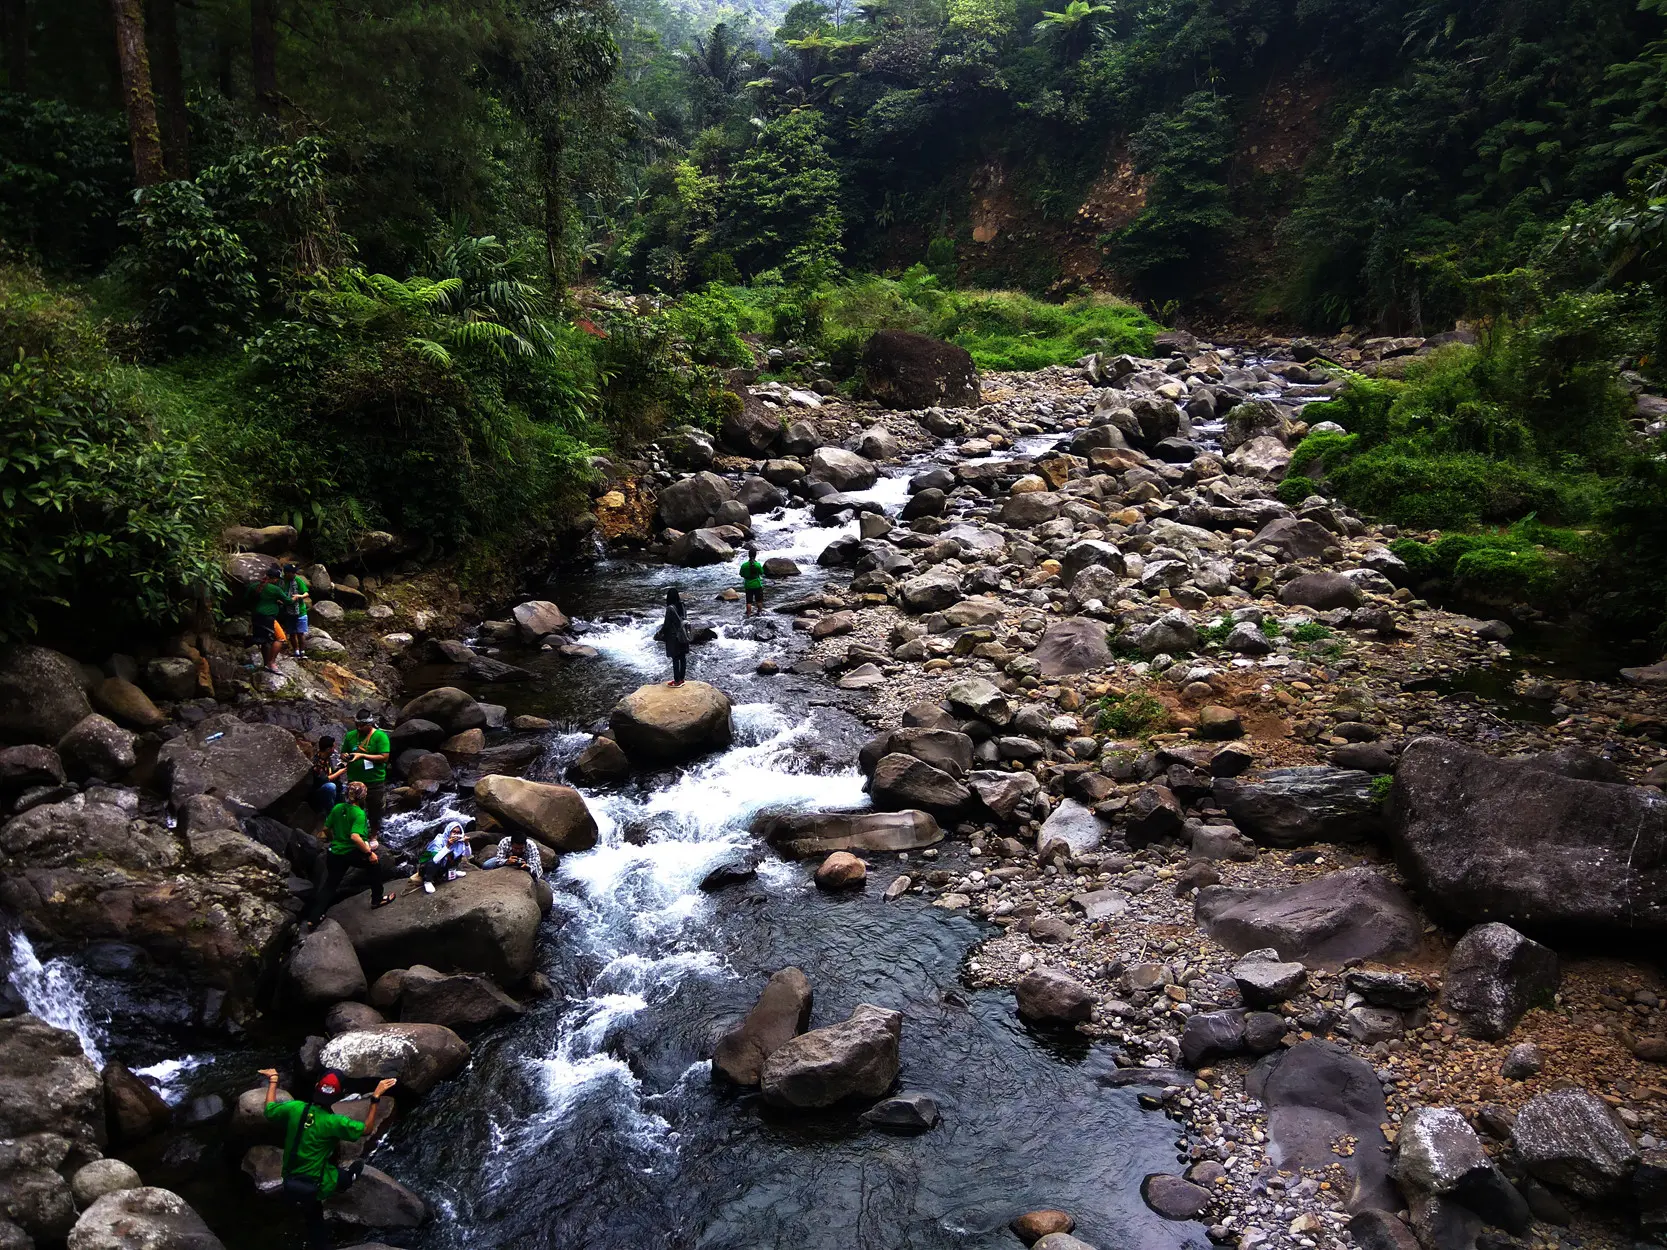 Memasuki kawasan ekowisata Petungkriyono, Pekalongan, pandangan mata akan dimanjakan oleh hutan lebat dan perbukitan tak berpenghuni. (Liputan6.com/Fajar Eko Nugroho)